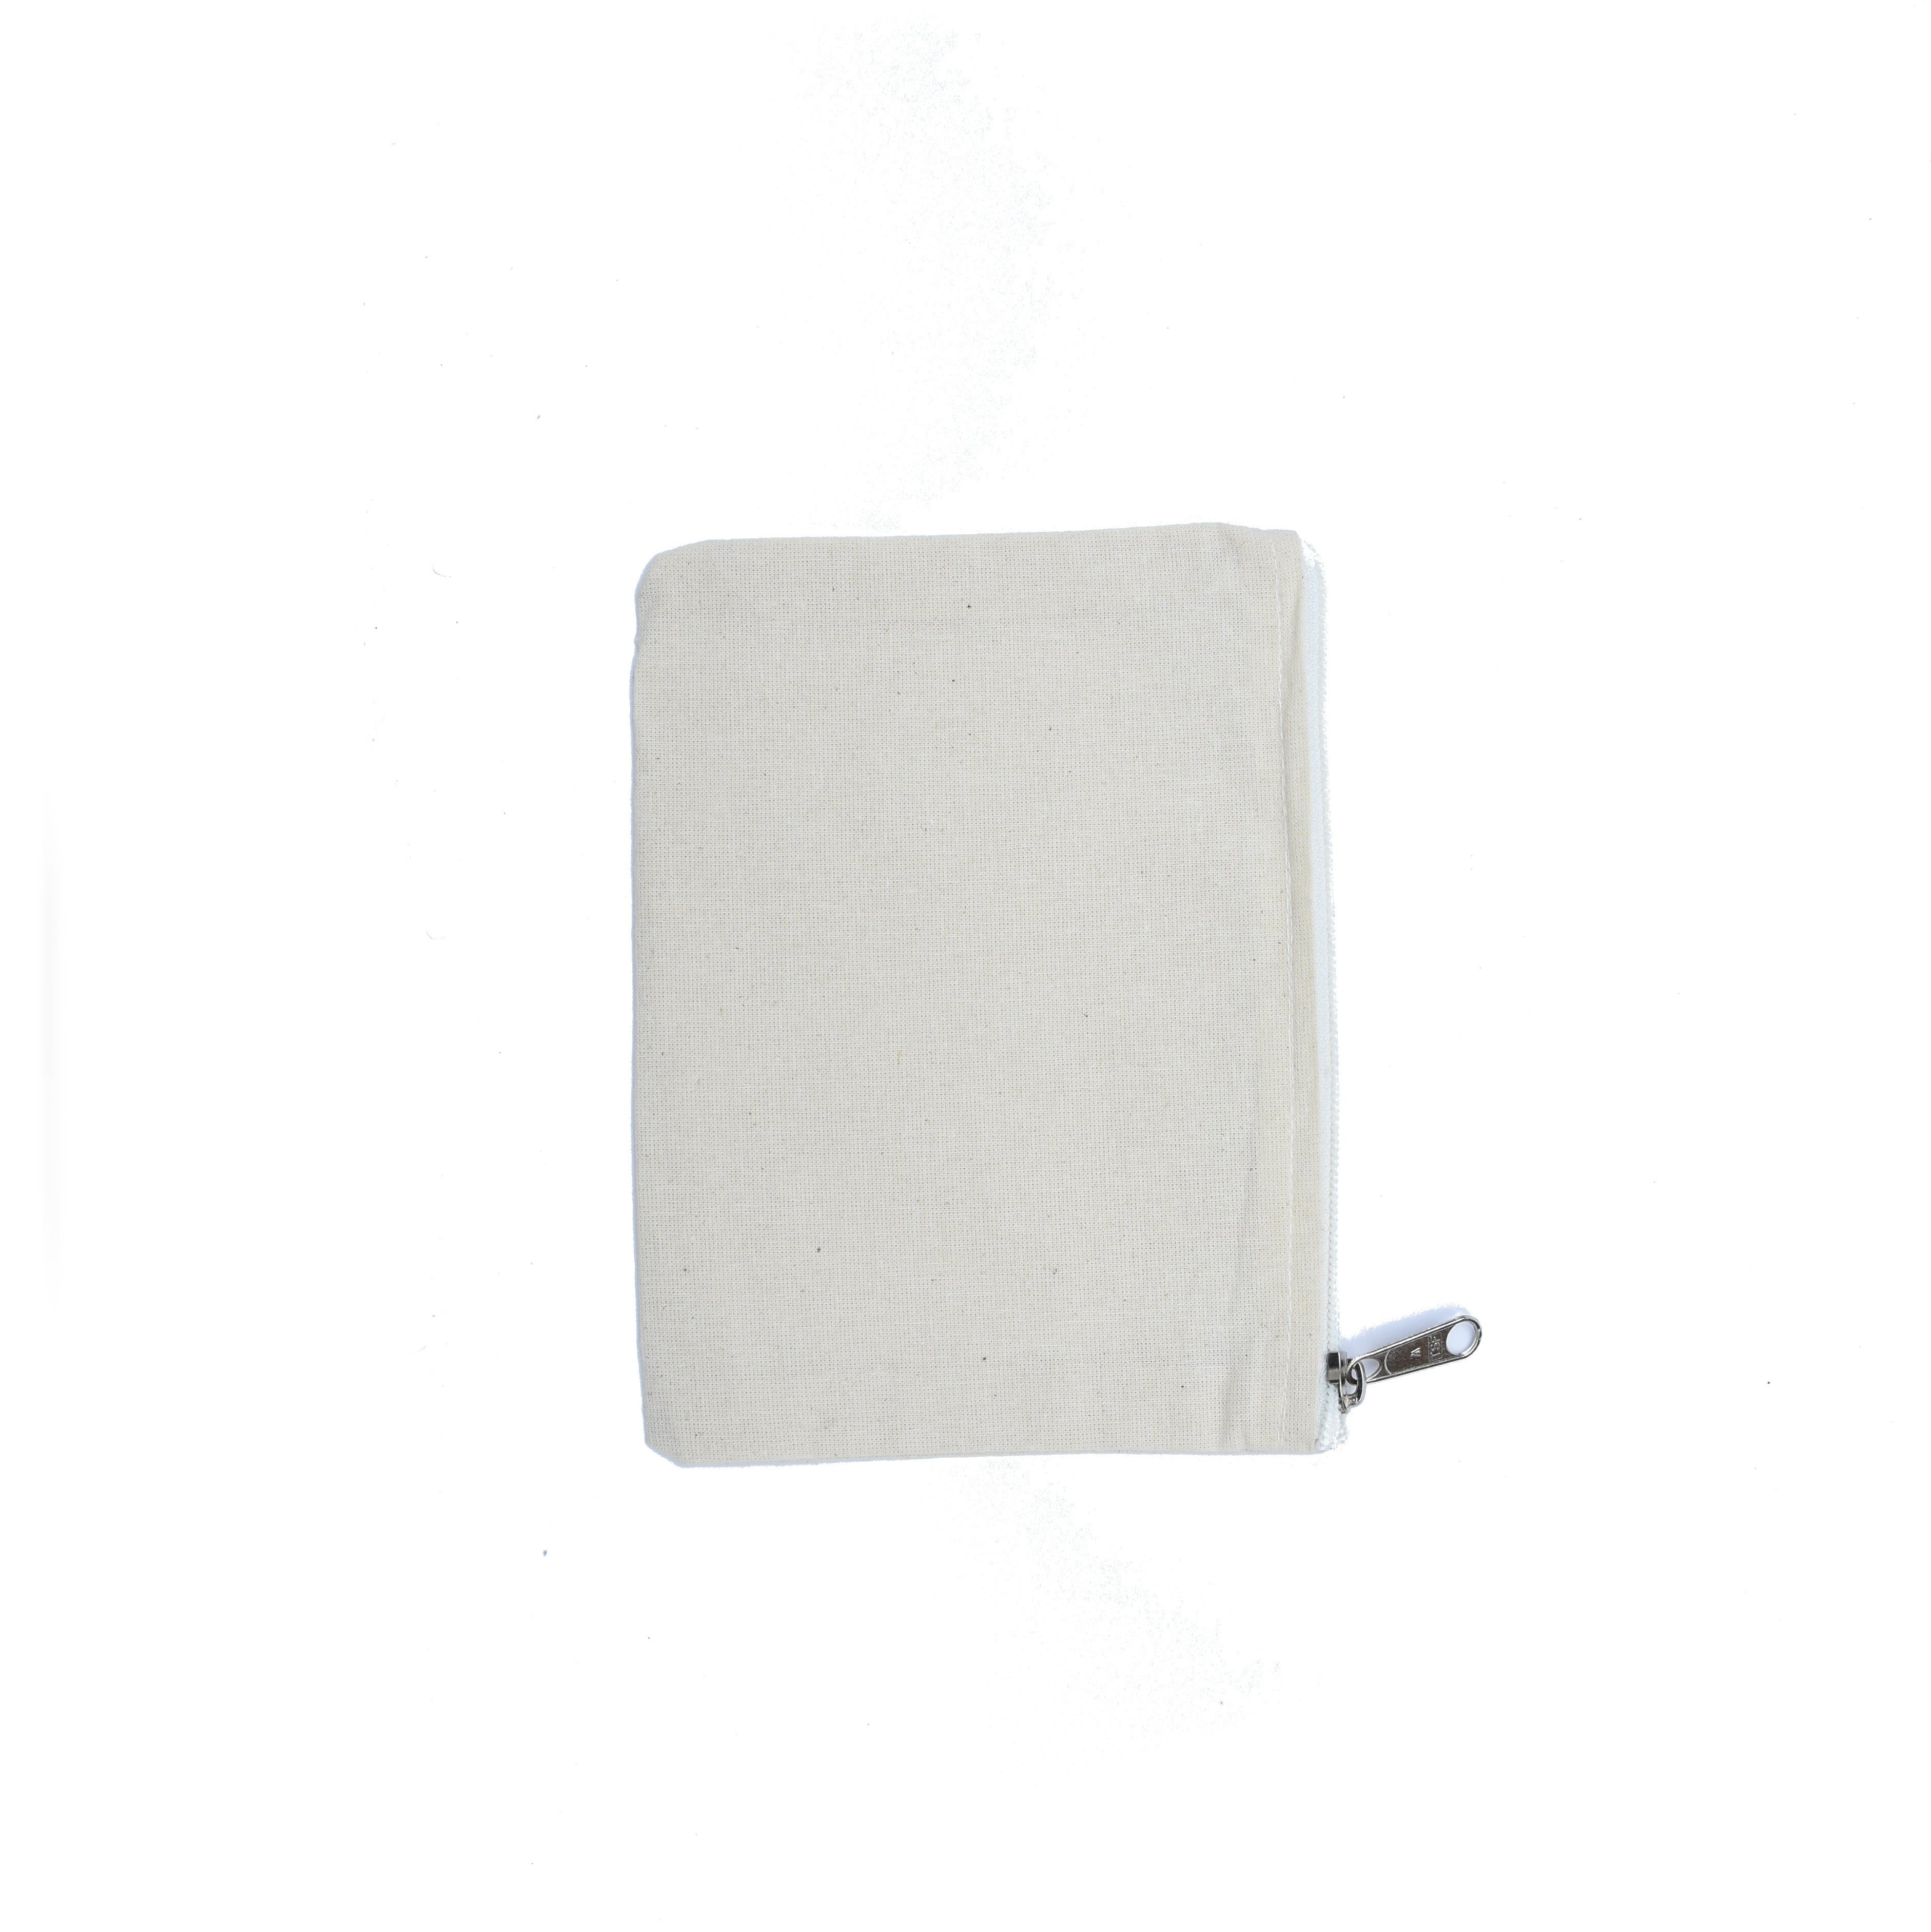 white canvas zipper bag White